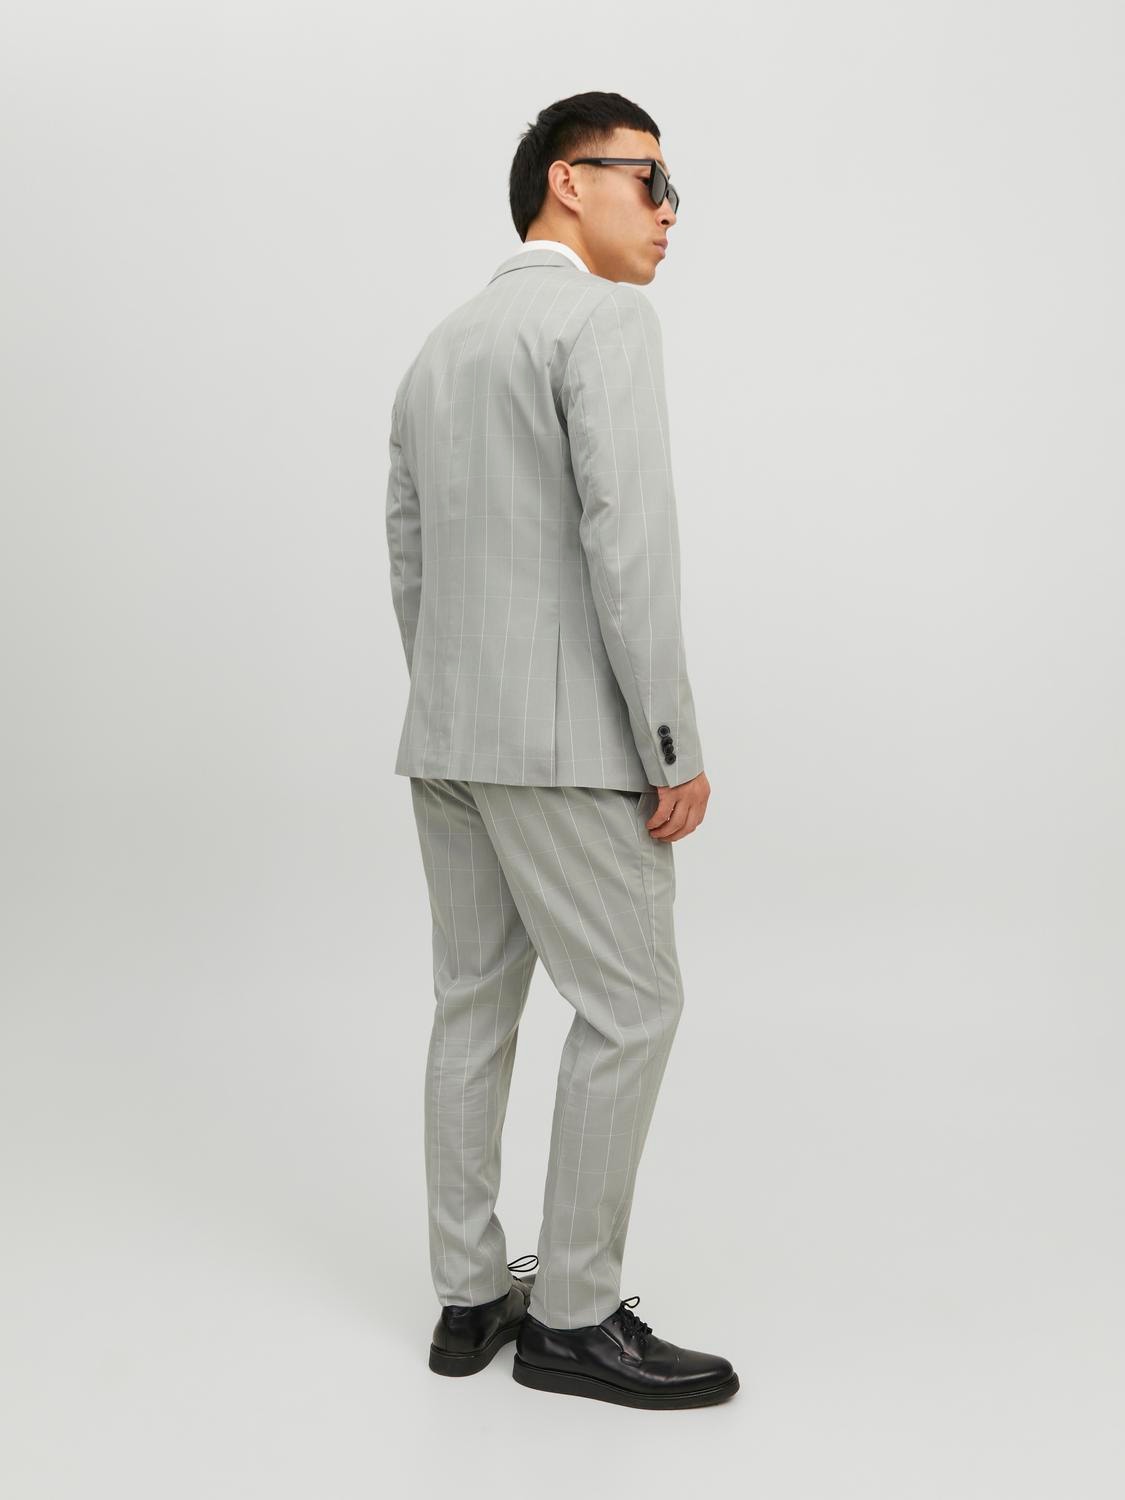 Jack & Jones JPRFRANCO Super Slim Fit Suit -Light Gray - 12183530